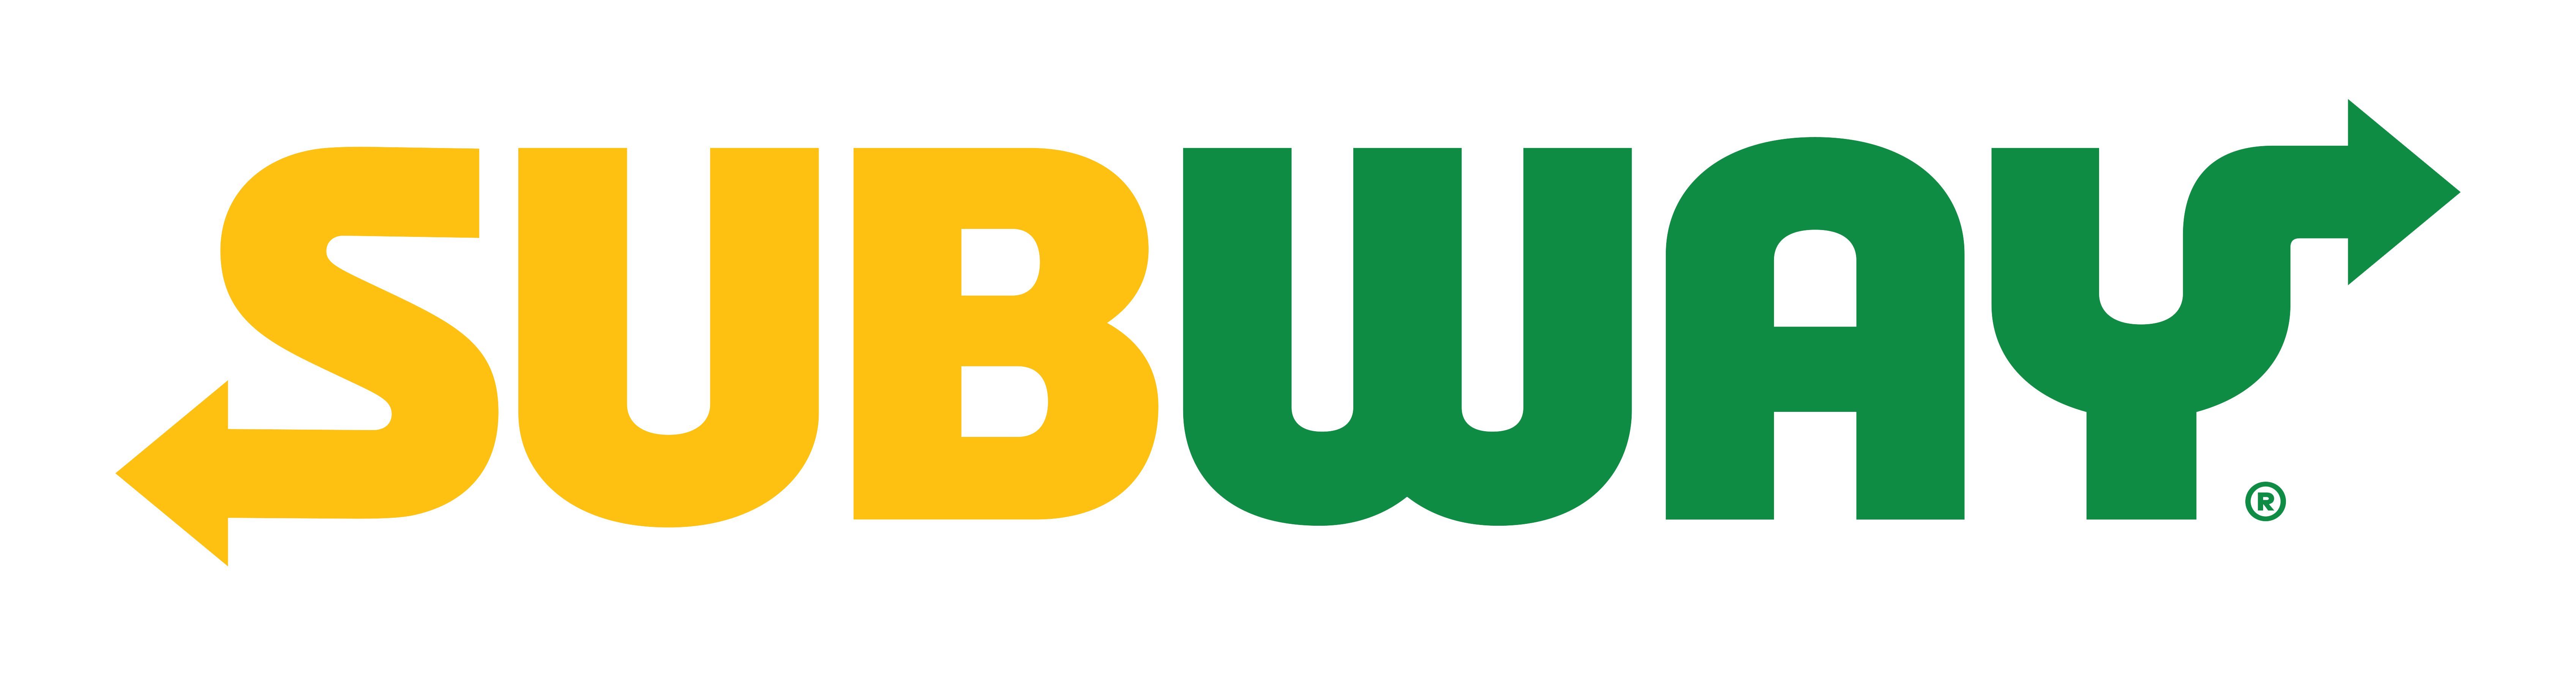 Subway Logo PNG - 177342